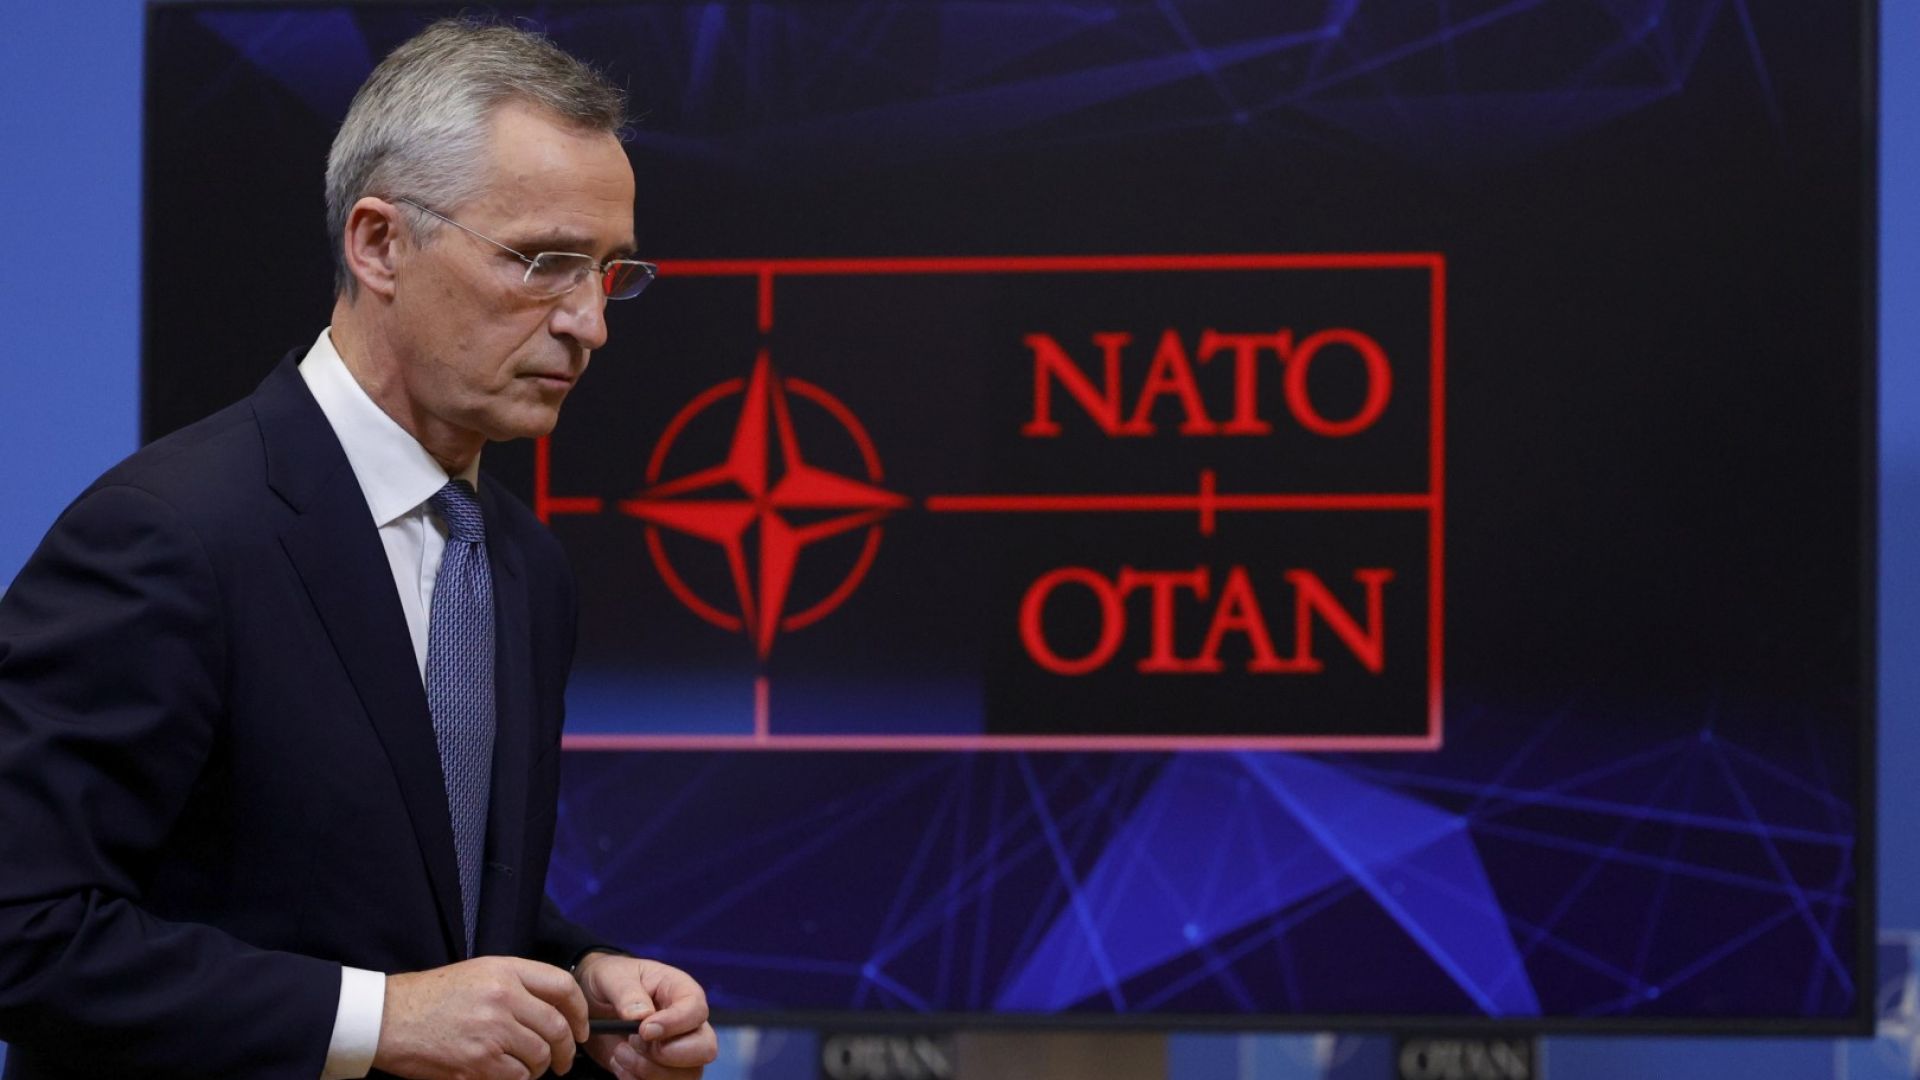 Йенс Столтенберг говори пред медиите след срещата НАТО - Русия в Брюксел